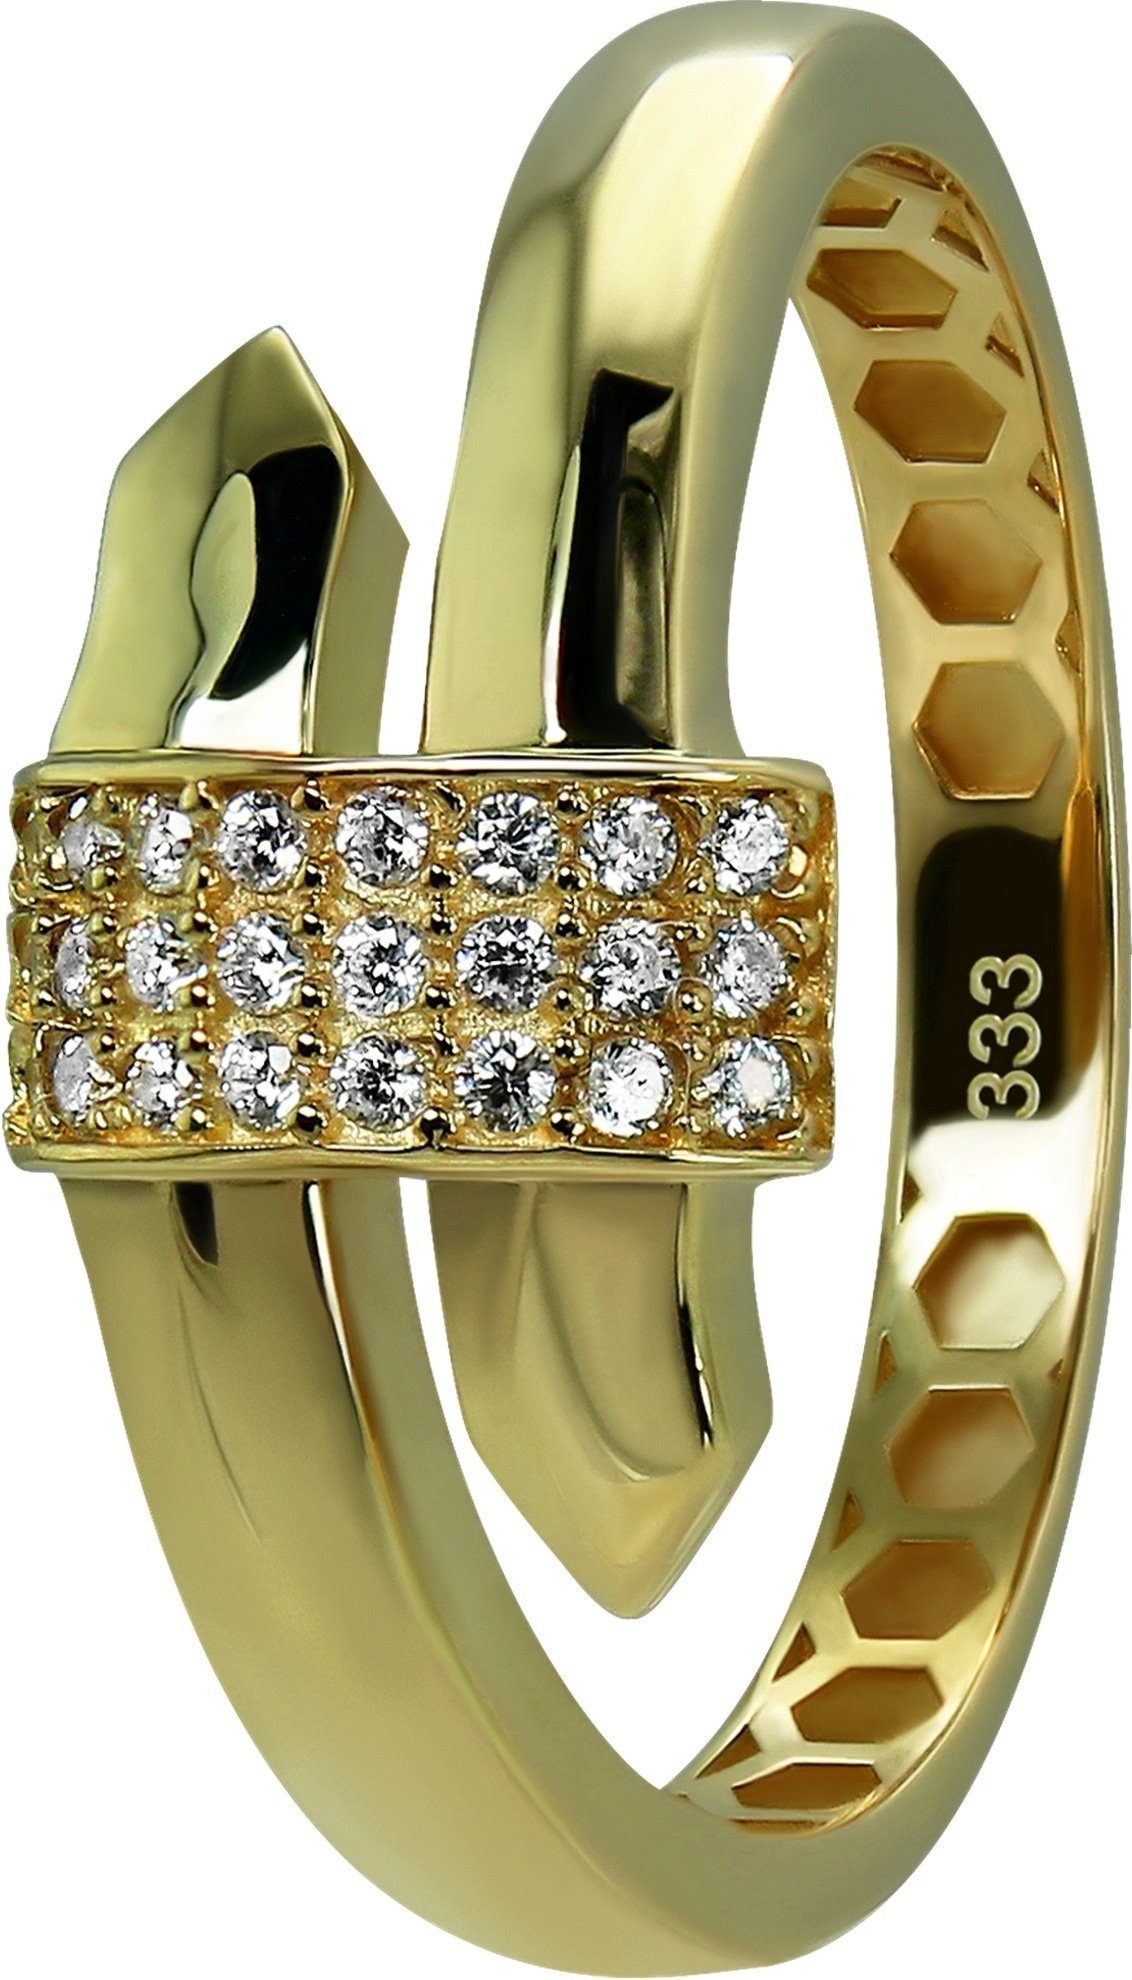 GoldDream Goldring GoldDream Gold Ring Glamour Gr.54 (Fingerring), Damen Ring Glamour 333 Gelbgold - 8 Karat, Farbe: gold, weiß